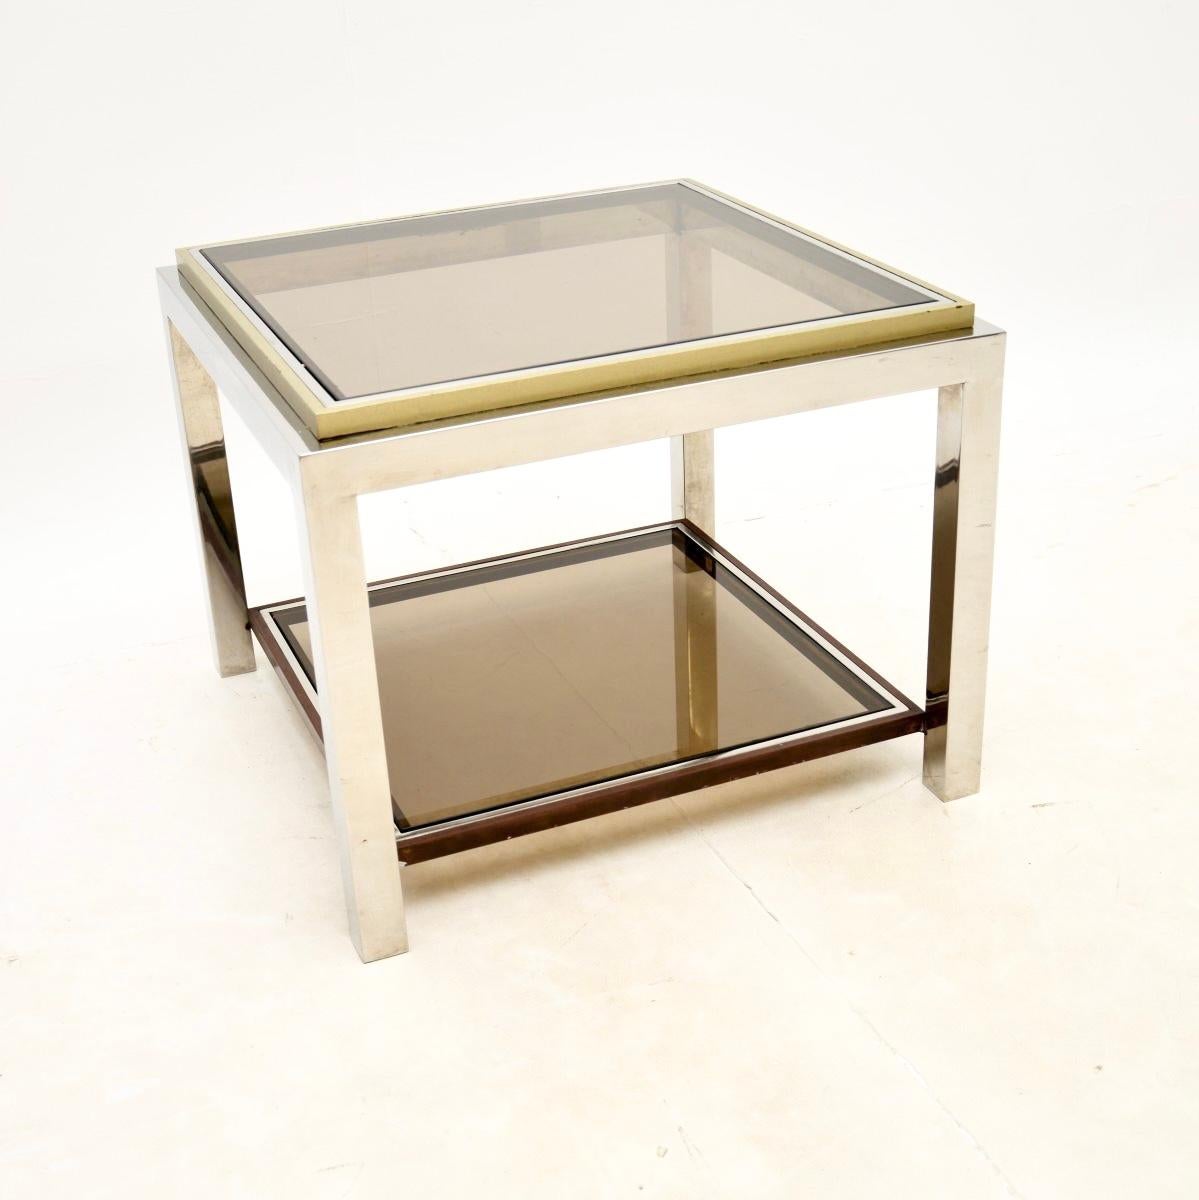 Une fantastique table d'appoint / table basse vintage française en chrome et laiton, datant des années 1970.

Il est d'une qualité exceptionnelle, le cadre est extrêmement bien fait, épais et lourd. Le chrome a une finition en laiton autour des